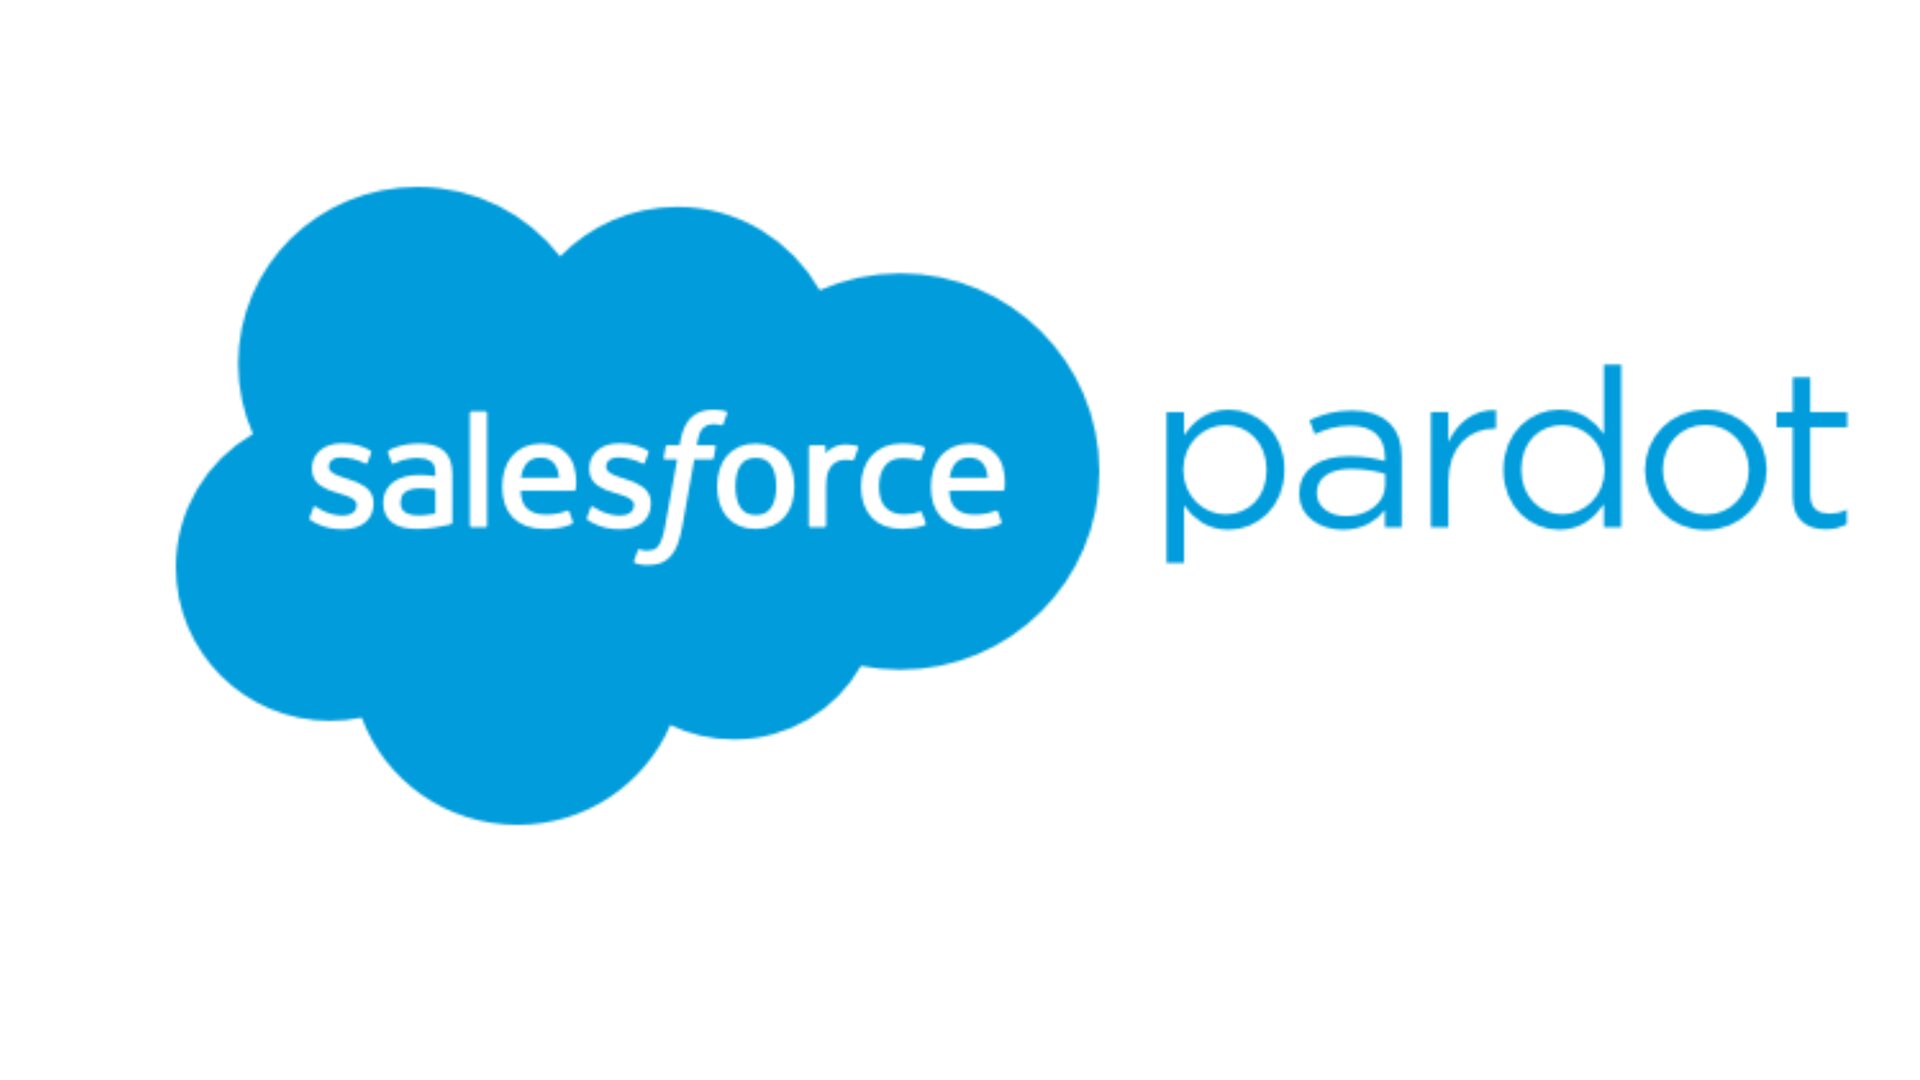 The salesforce Logo next to the Pardot logo